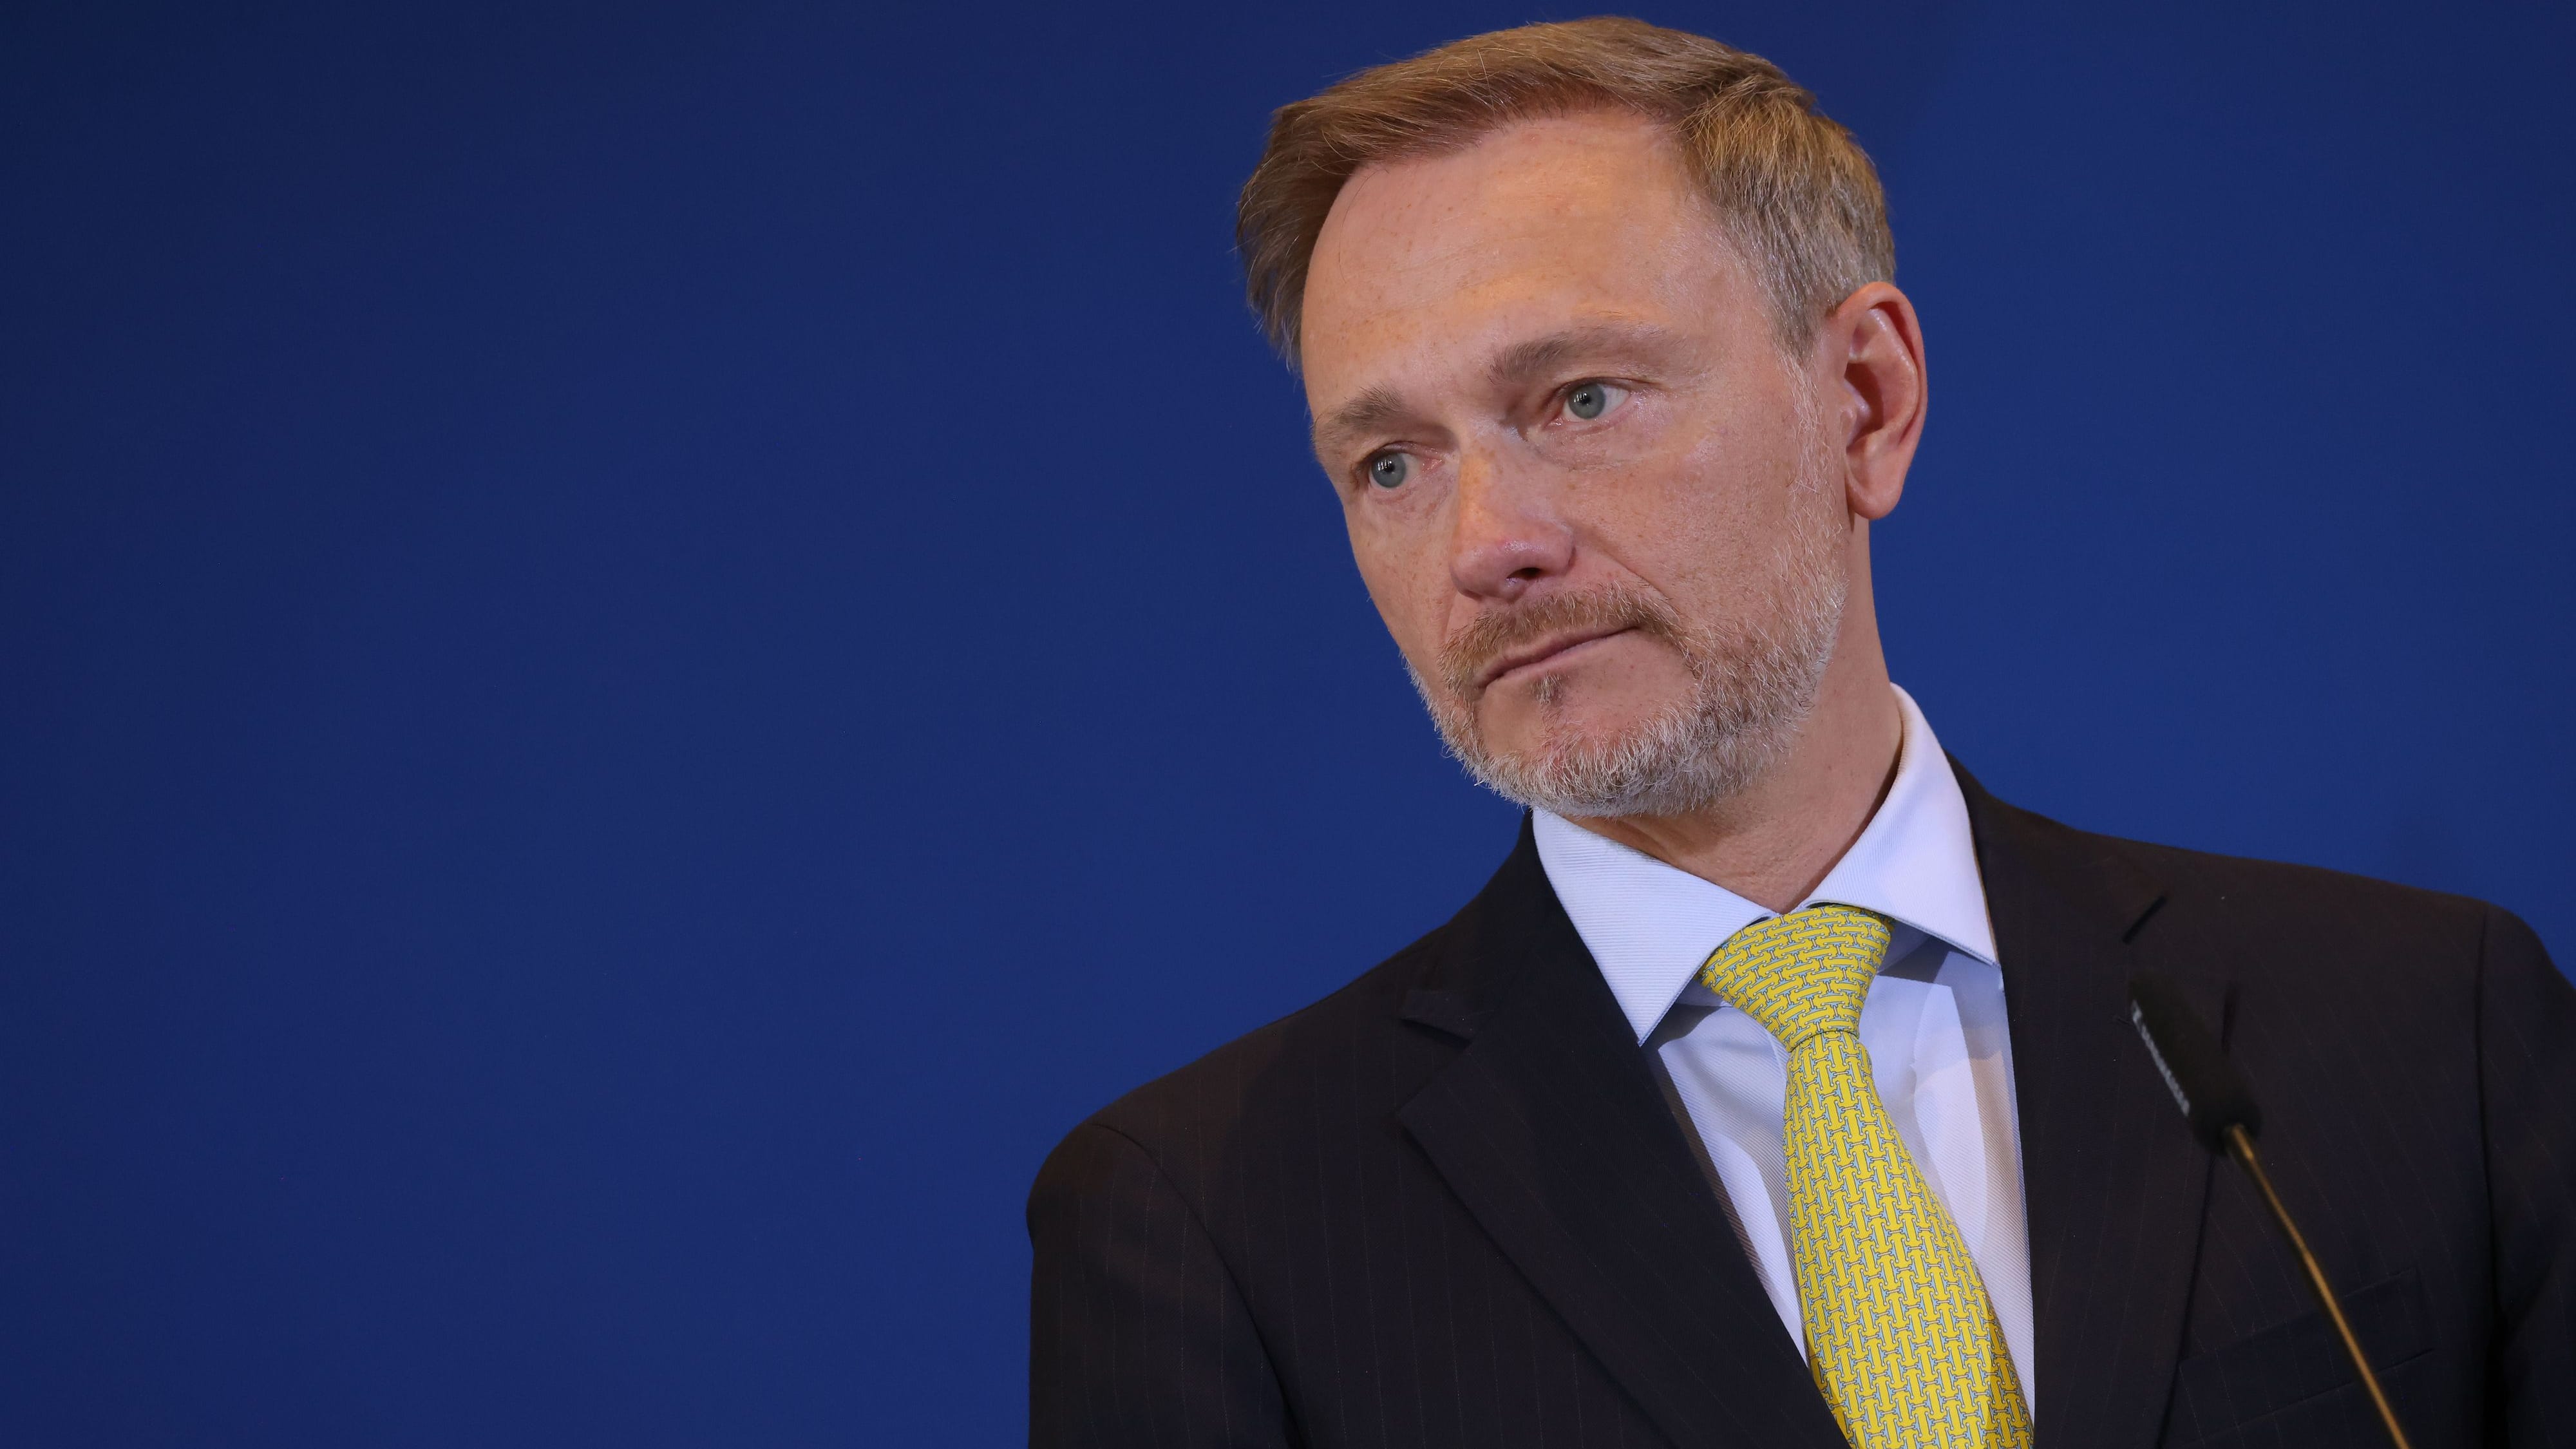 Messerangriff von Mannheim: FDP-Chef Lindner fordert “Schluss mit falscher Toleranz”